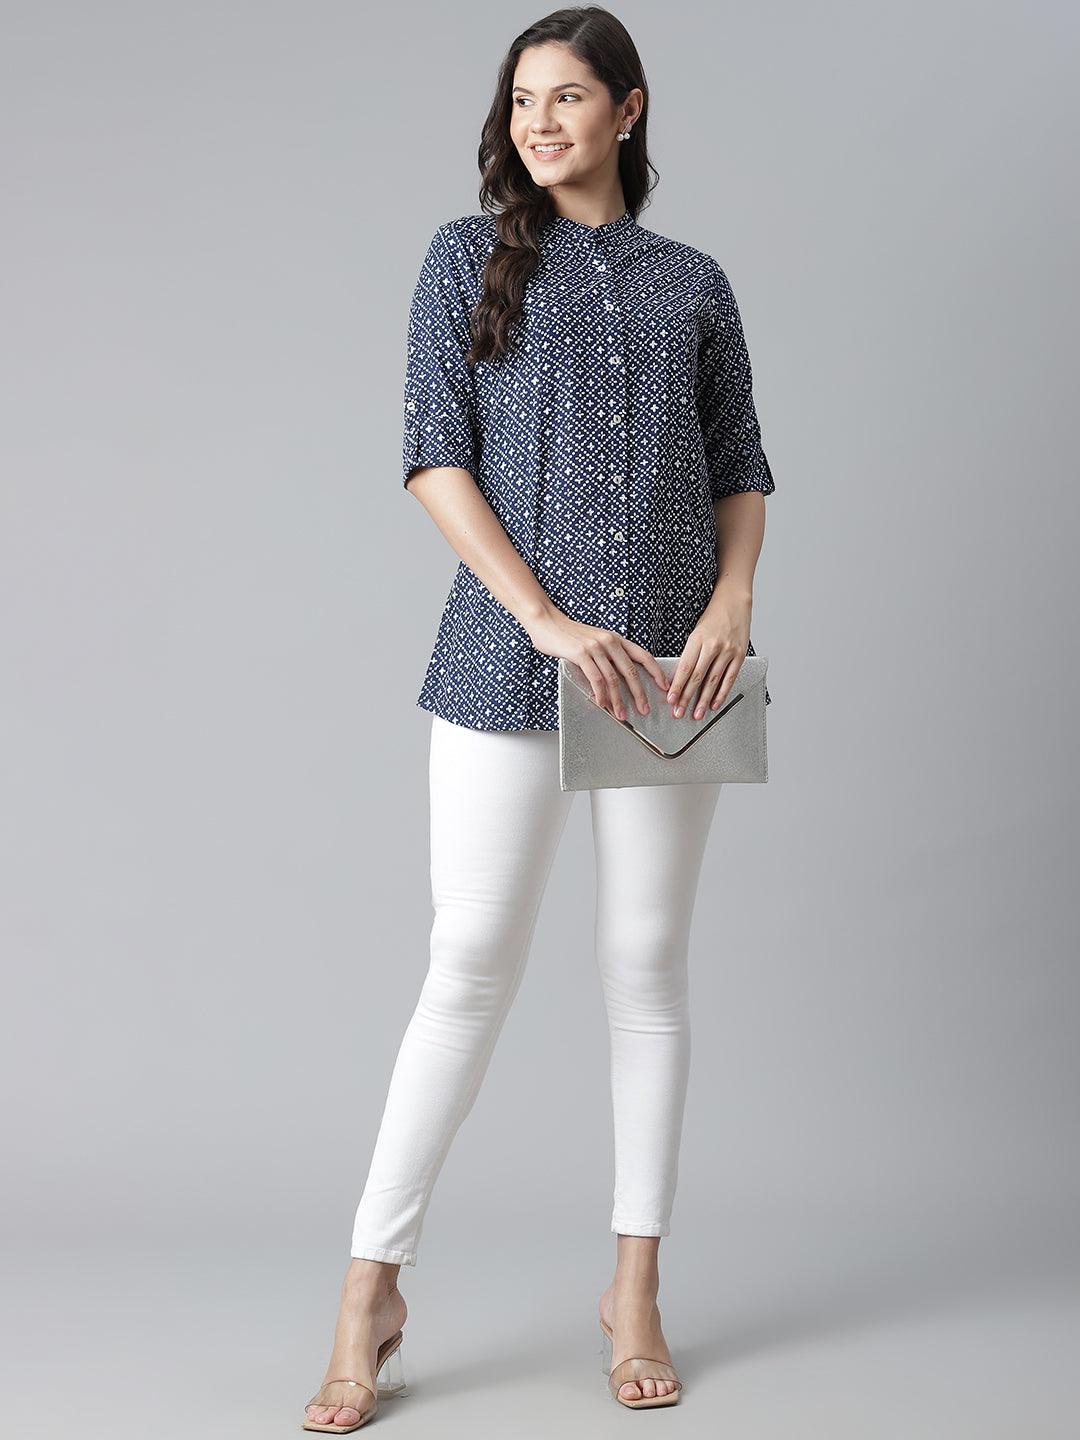 Divena Blue Rayon Printed Shirt Style Top - divena world